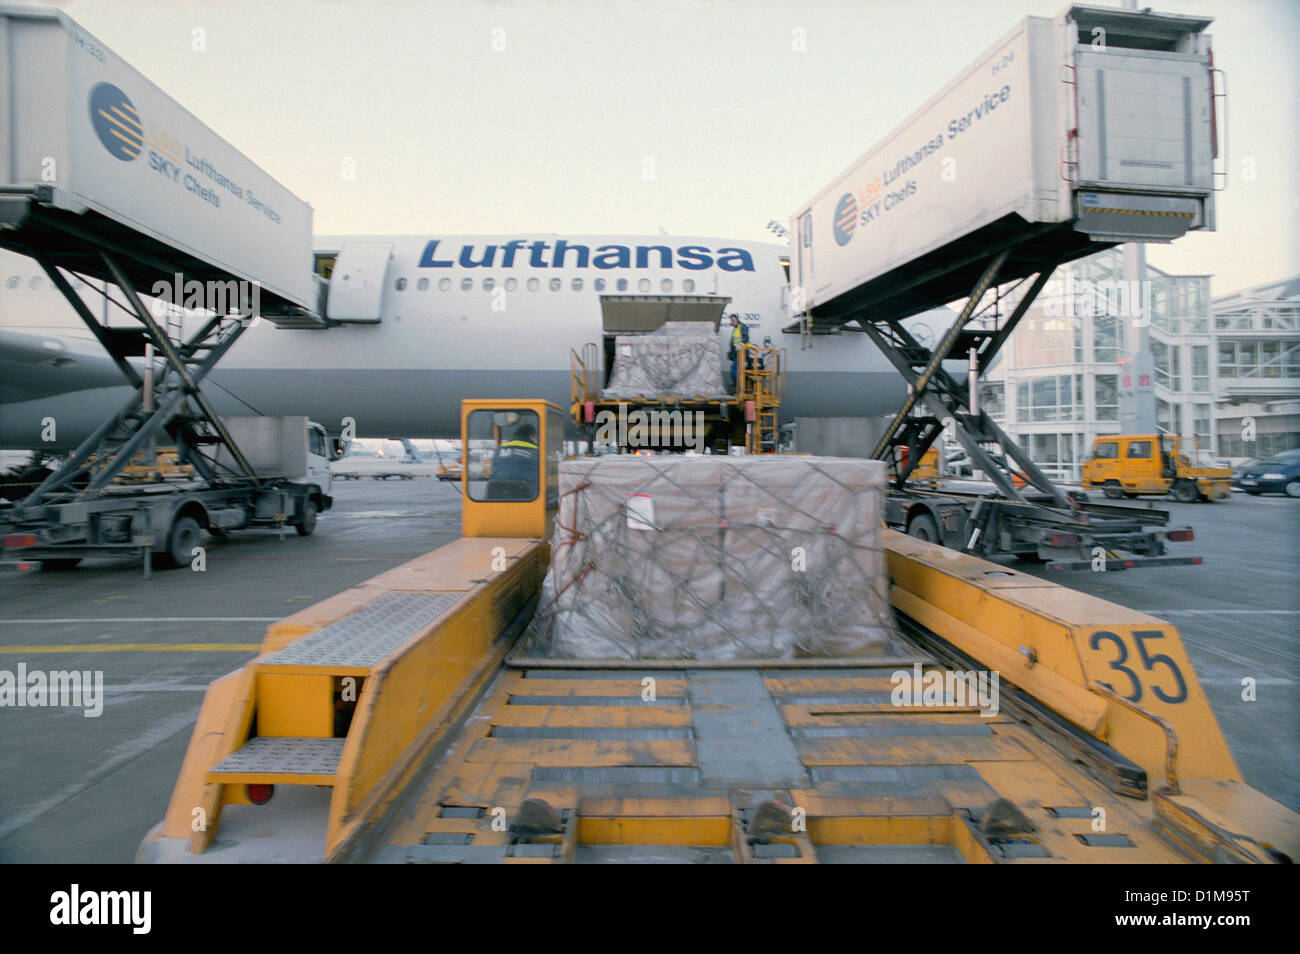 Flugzeug Air Vehicle Flugplatz Airlines Lufthansa Airport lizenzfrei außer anzeigen und Plakate Stockfoto